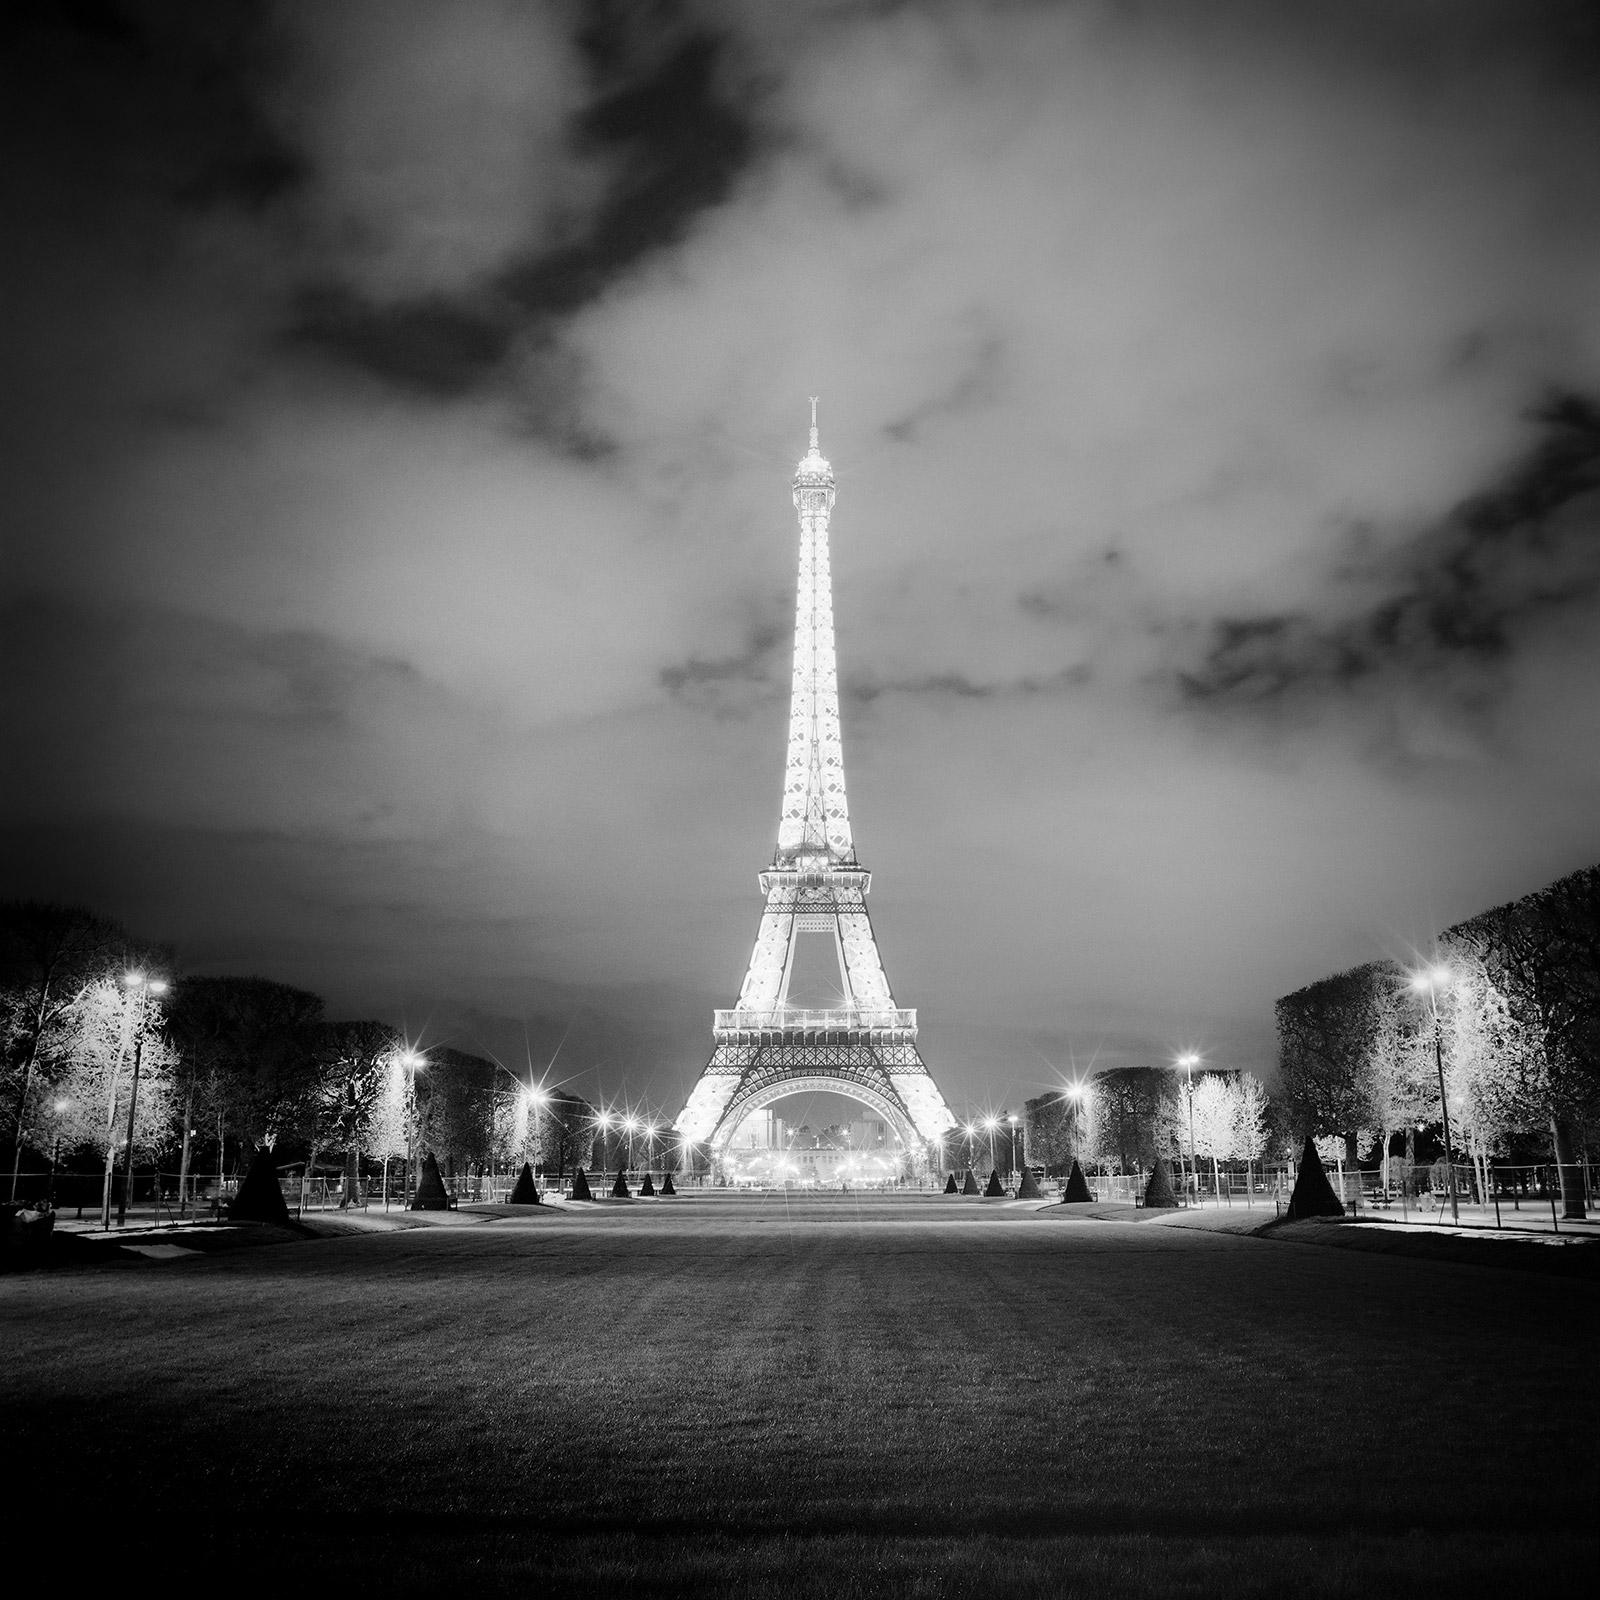 Landscape Photograph Gerald Berghammer - Tour Eiffel, Lights, Paris, spectacle de lumières, photographie en noir et blanc, paysage urbain